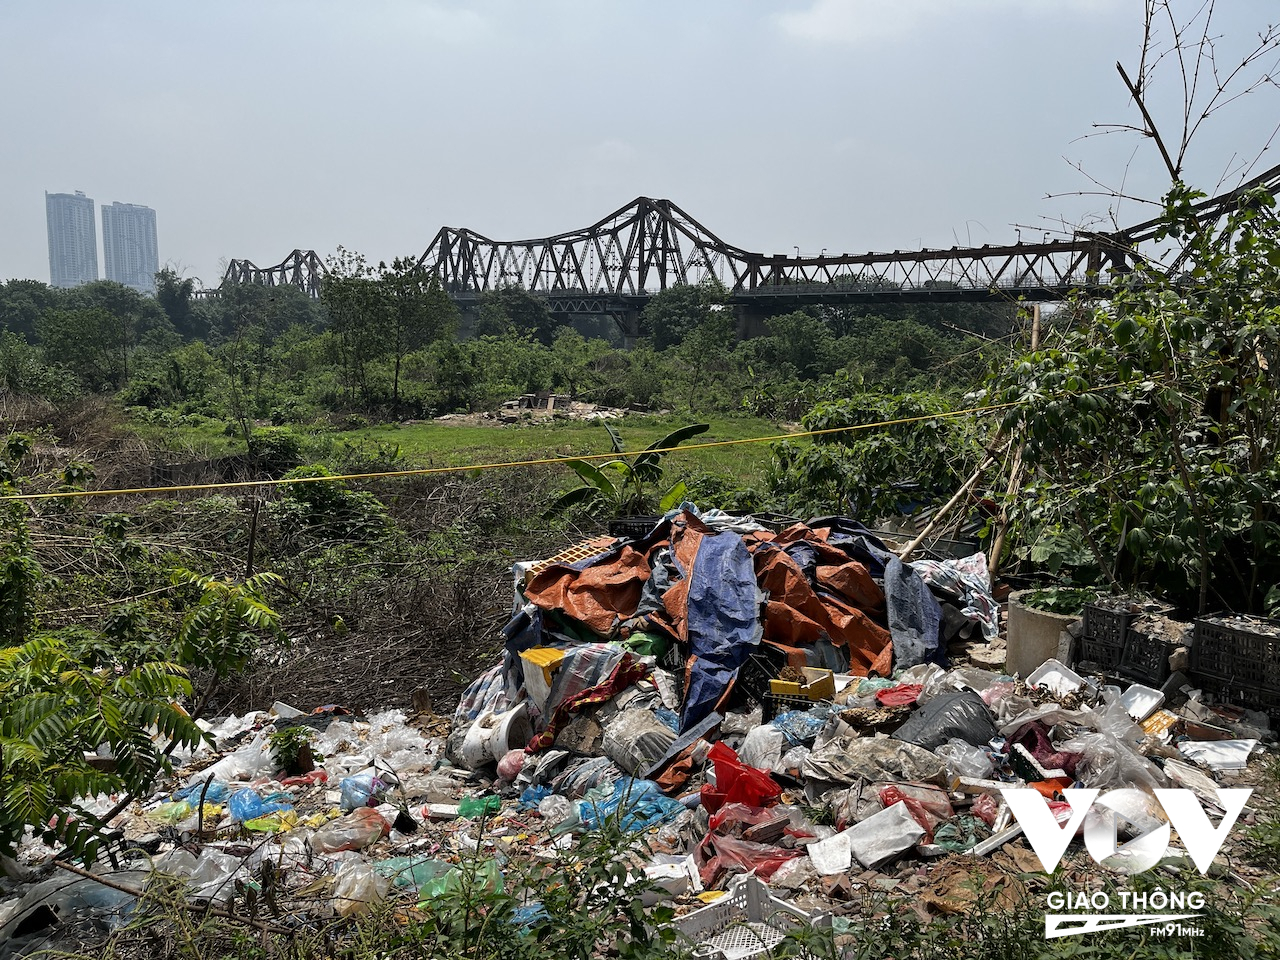 Ngay chính bản thân cư dân ở đây cũng góp phần cho môi trường cuộc sống của họ trở nên ô nhiễm, khi họ thoải mái vứt rác thải ra ngay trước cửa nhà, xuống bãi sông Hồng